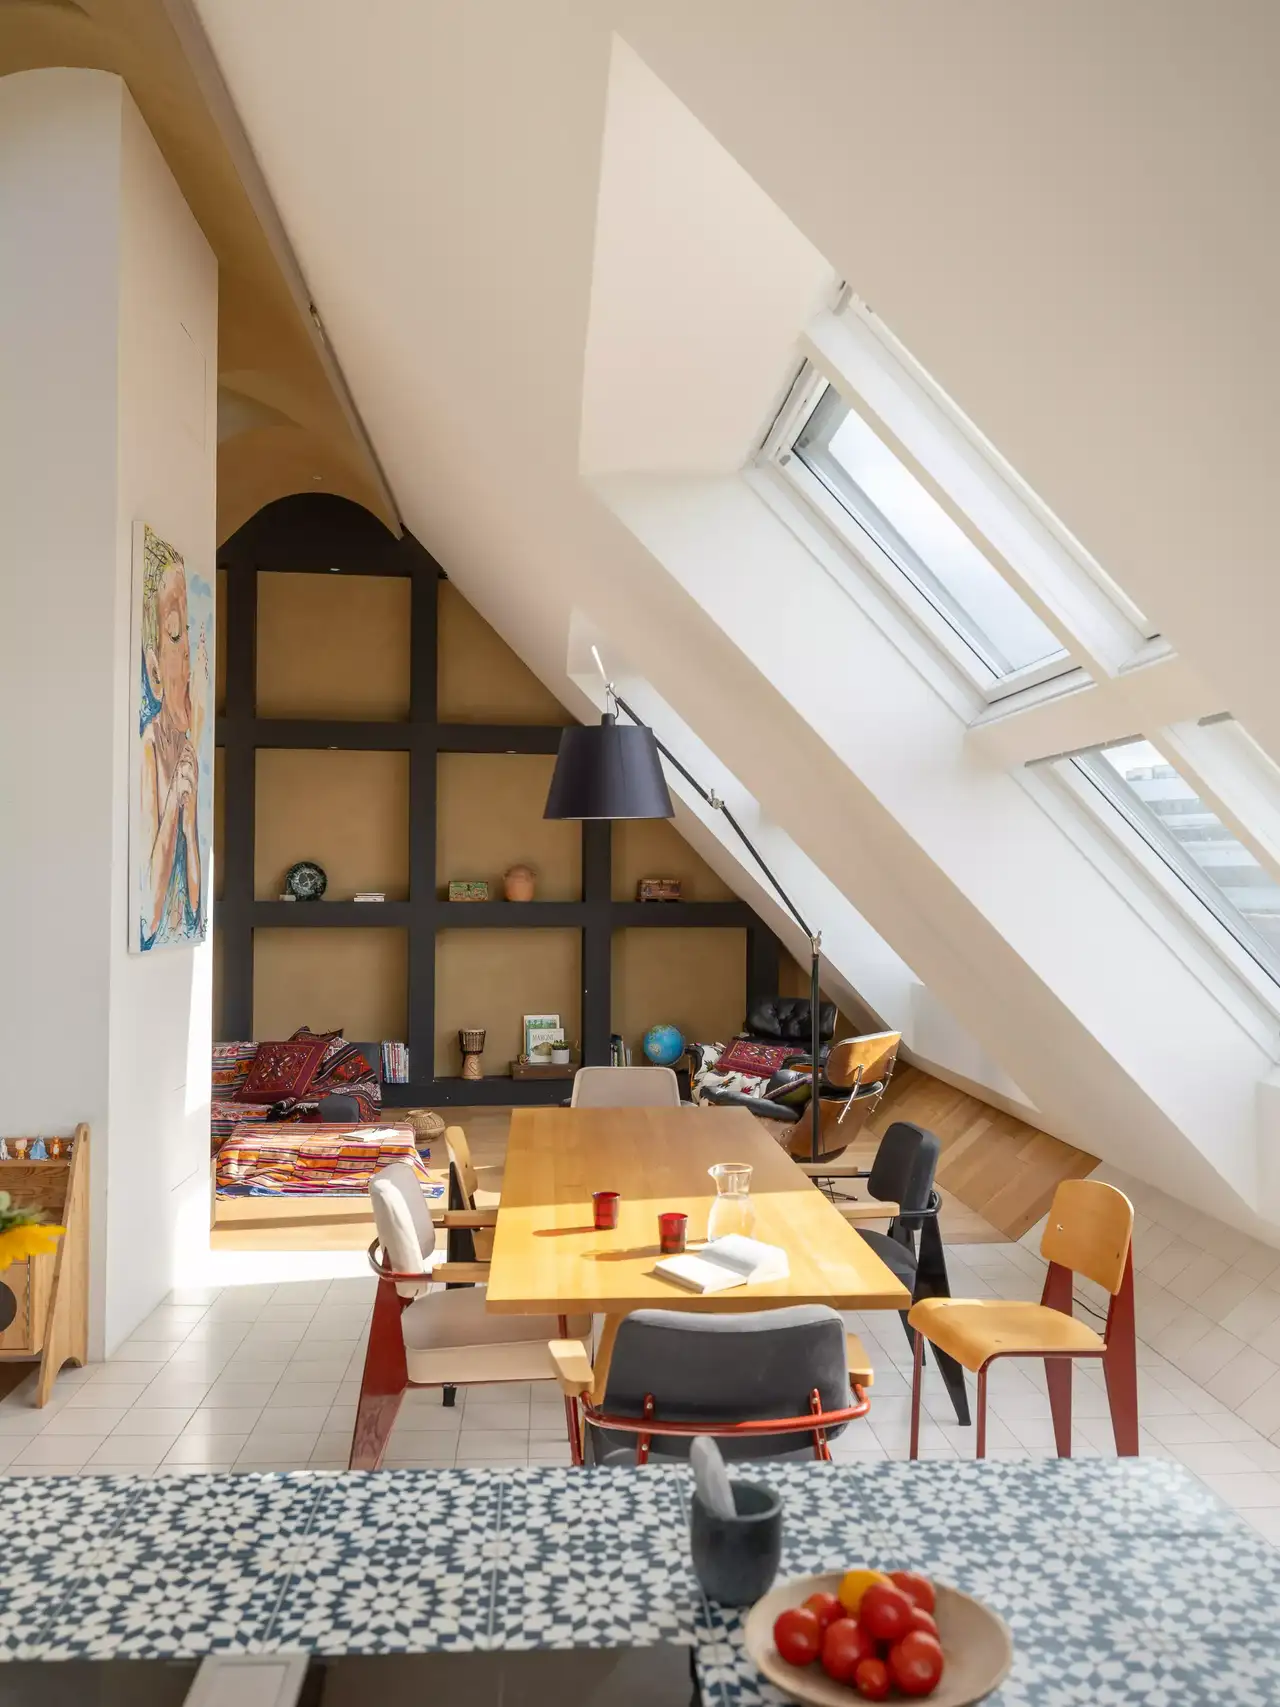 Dachboden-Esszimmer mit natürlichem Licht durch VELUX Dachflächenfenster, hölzerner Tisch und offene Regale.